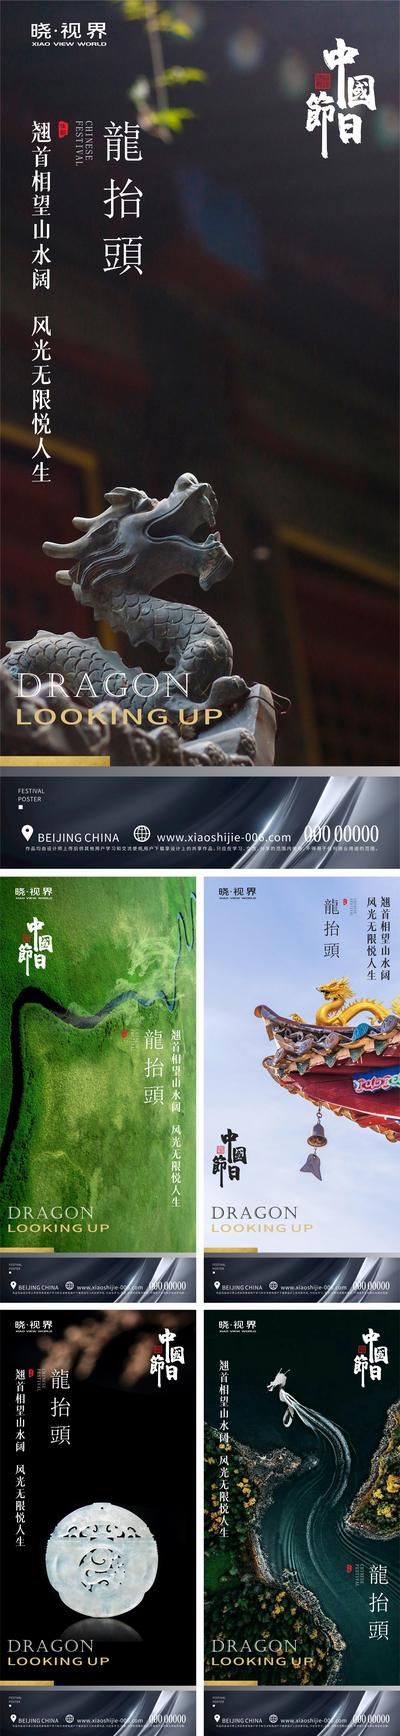 【南门网】海报 中国传统节日 二月初二 龙抬头 中式 龙 雕塑 玉佩